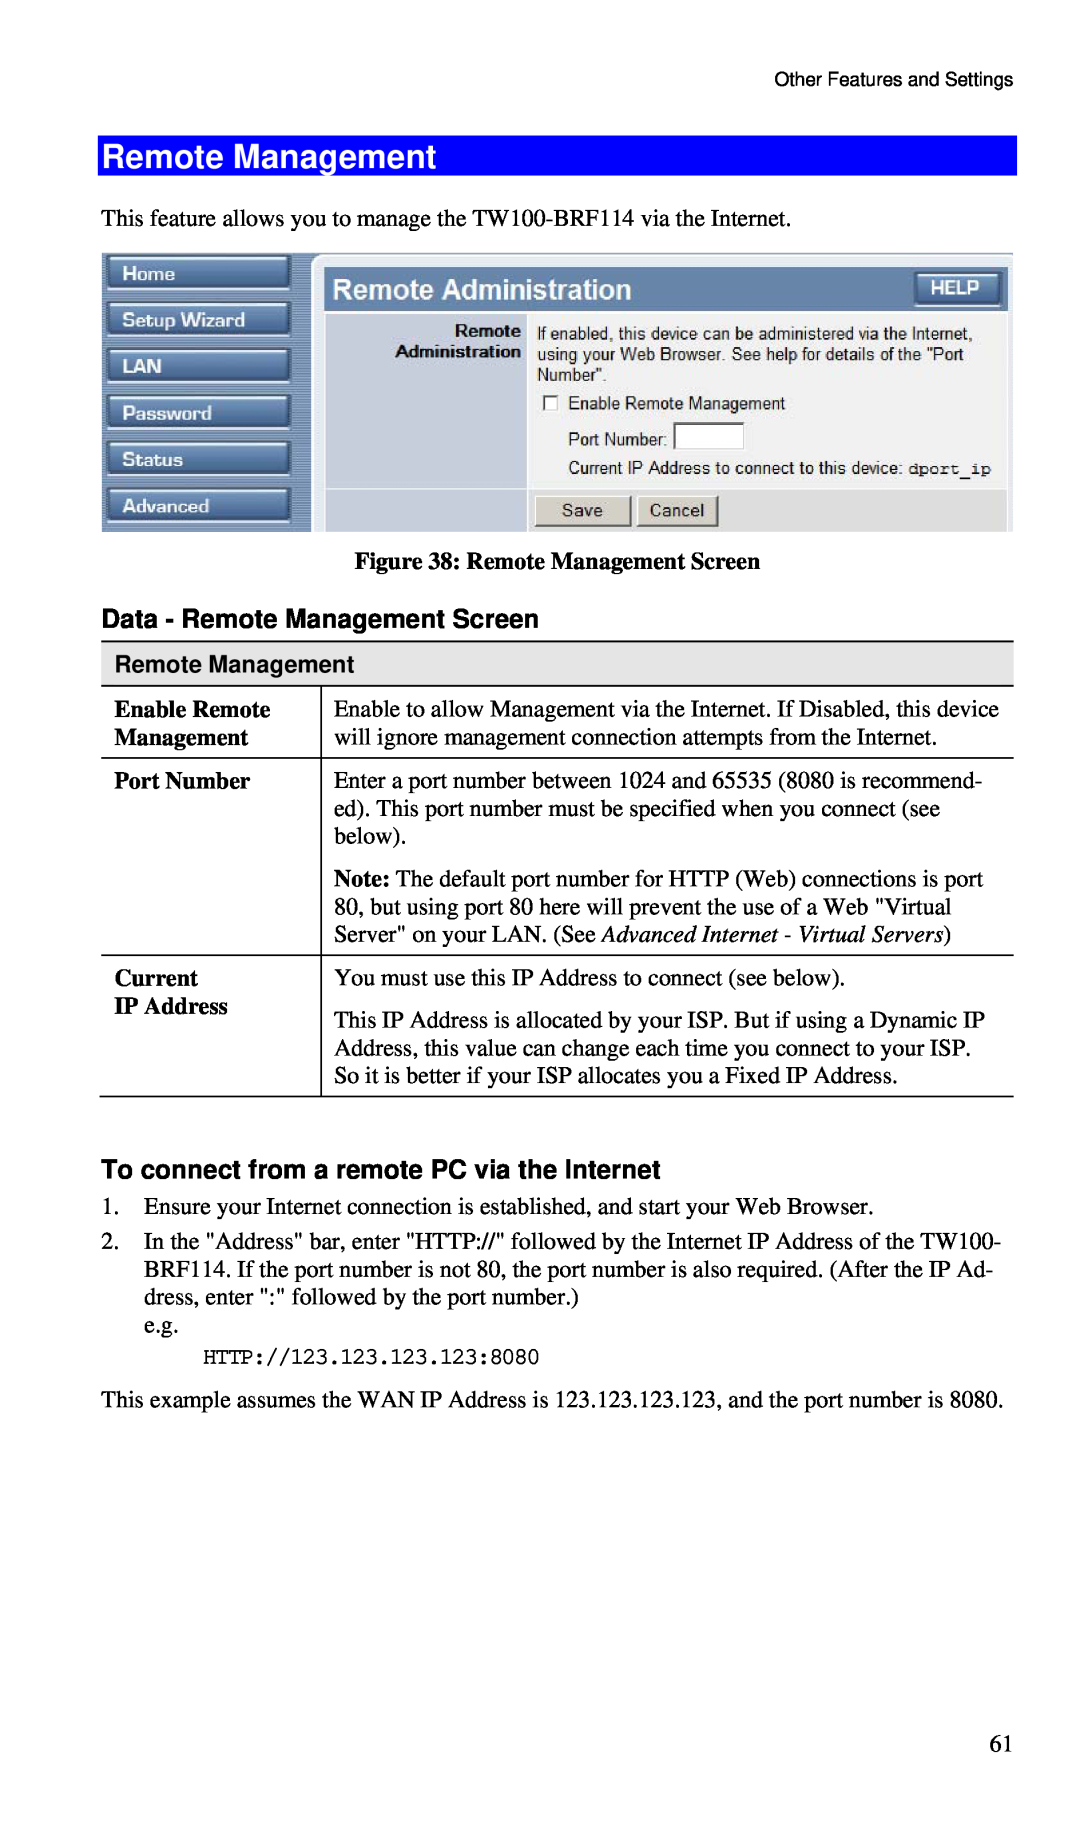 TRENDnet BRF114 manual Remote Management Screen, Enable Remote, Port Number, Current, IP Address 